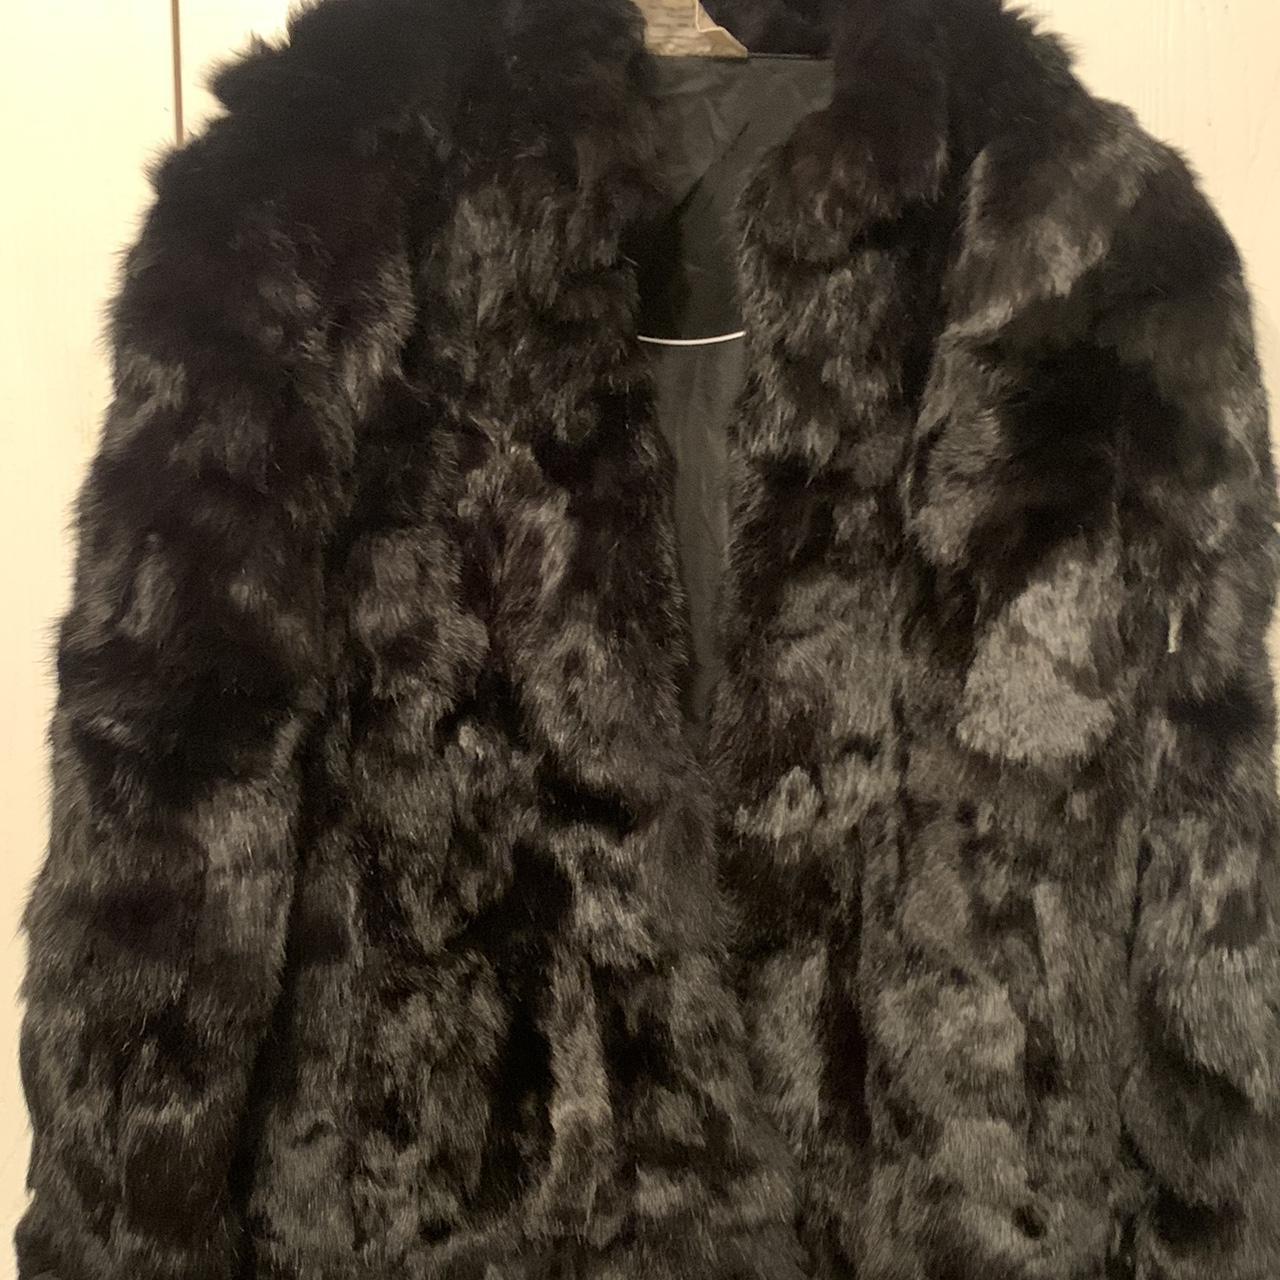 Black 100% genuine rabbit fur coat Has some tears... - Depop